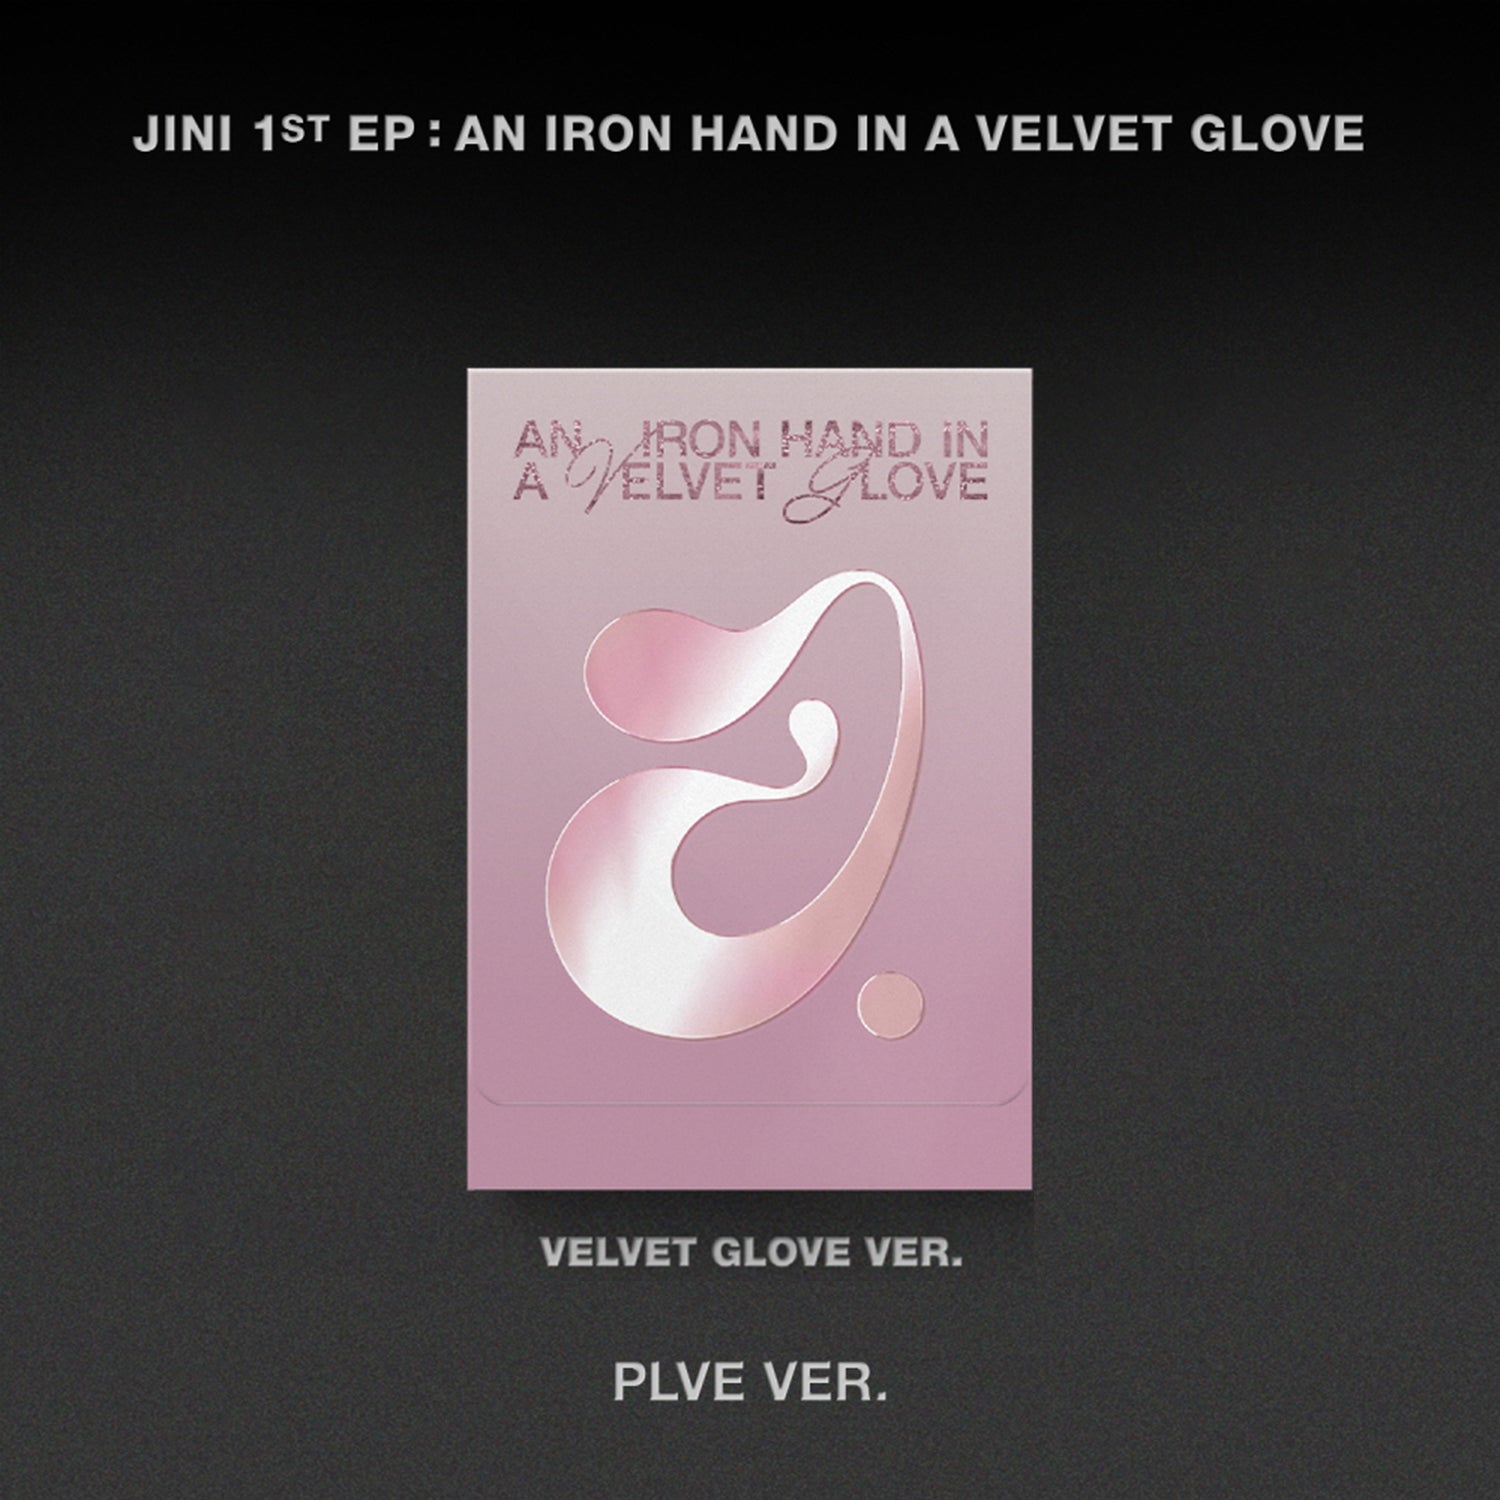 JINI 1ST EP ALBUM 'AN IRON HAND IN A VELVET GLOVE' (PLVE) VELVET GLOVE VERSION COVER